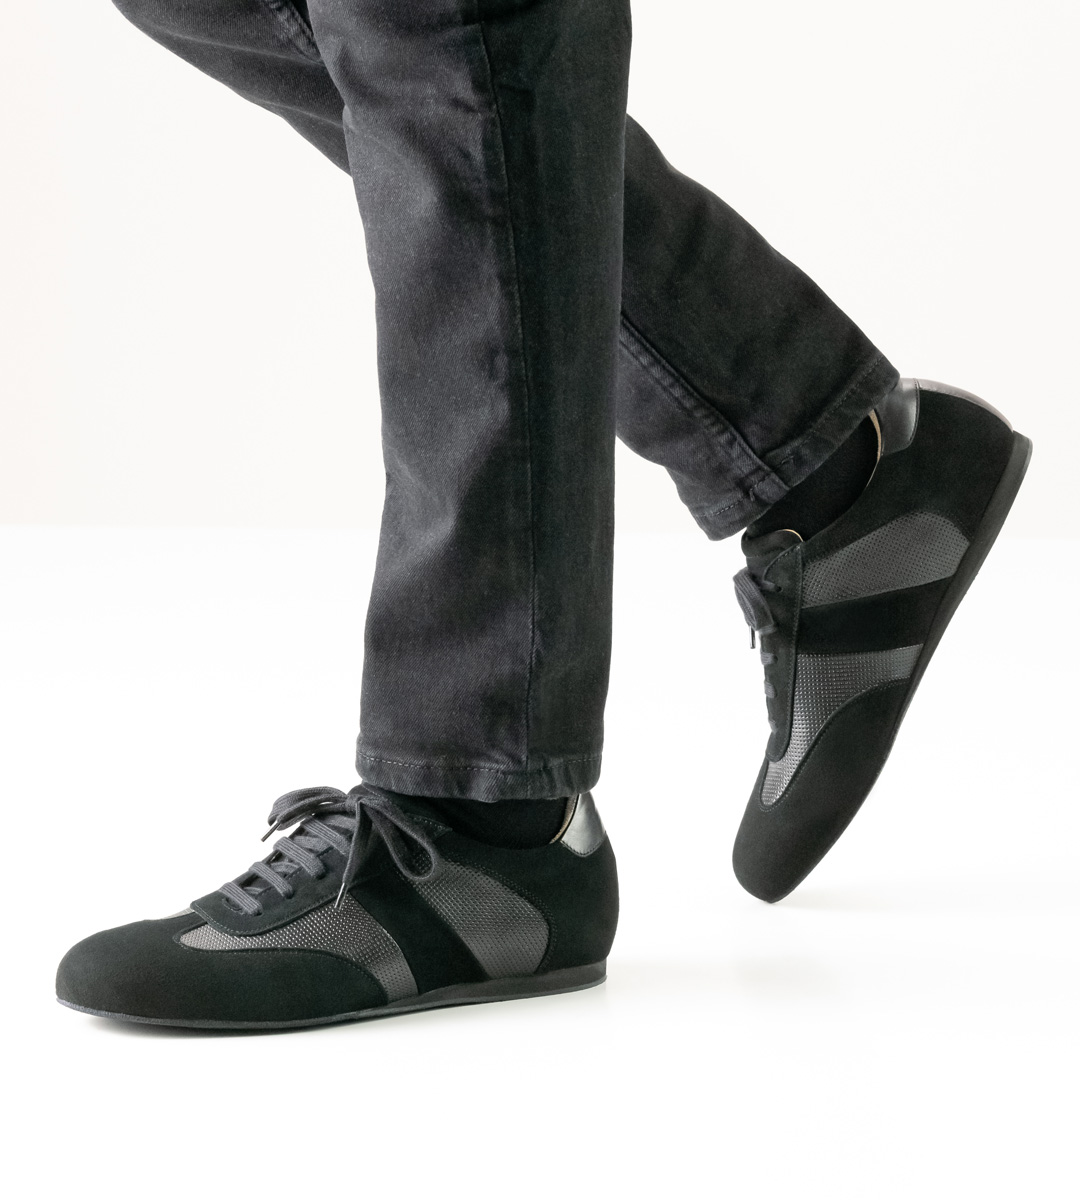 Werner Kern men's dance shoe in black for loose insoles